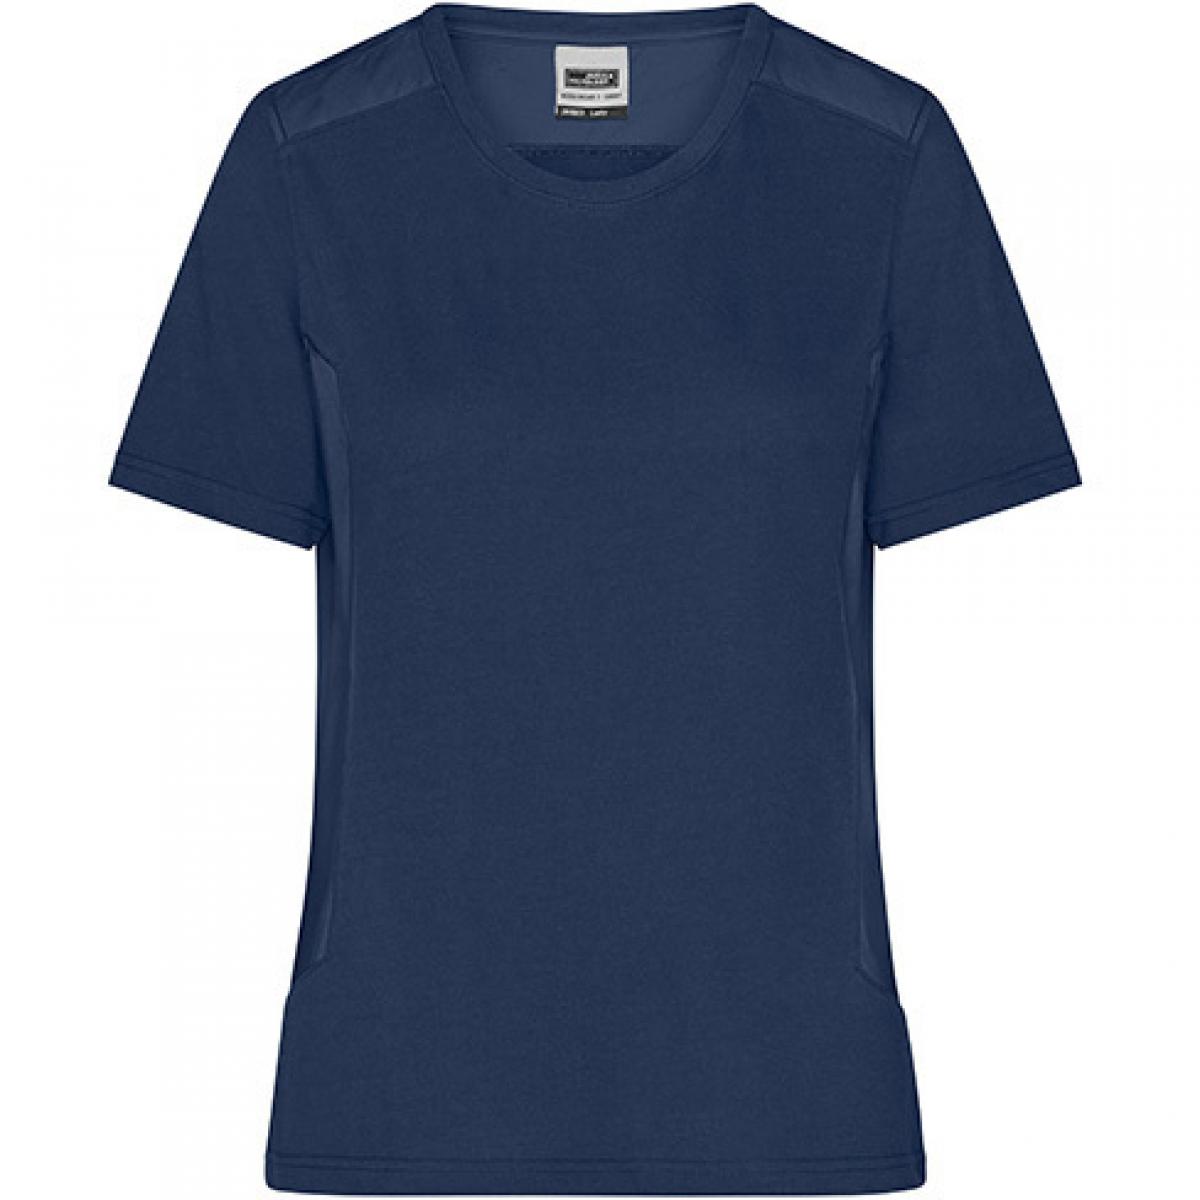 Hersteller: James+Nicholson Herstellernummer: JN1823 Artikelbezeichnung: Damen T, Ladies‘ Workwear T-Shirt -STRONG- Waschbar bis 60 ° Farbe: Navy/Navy